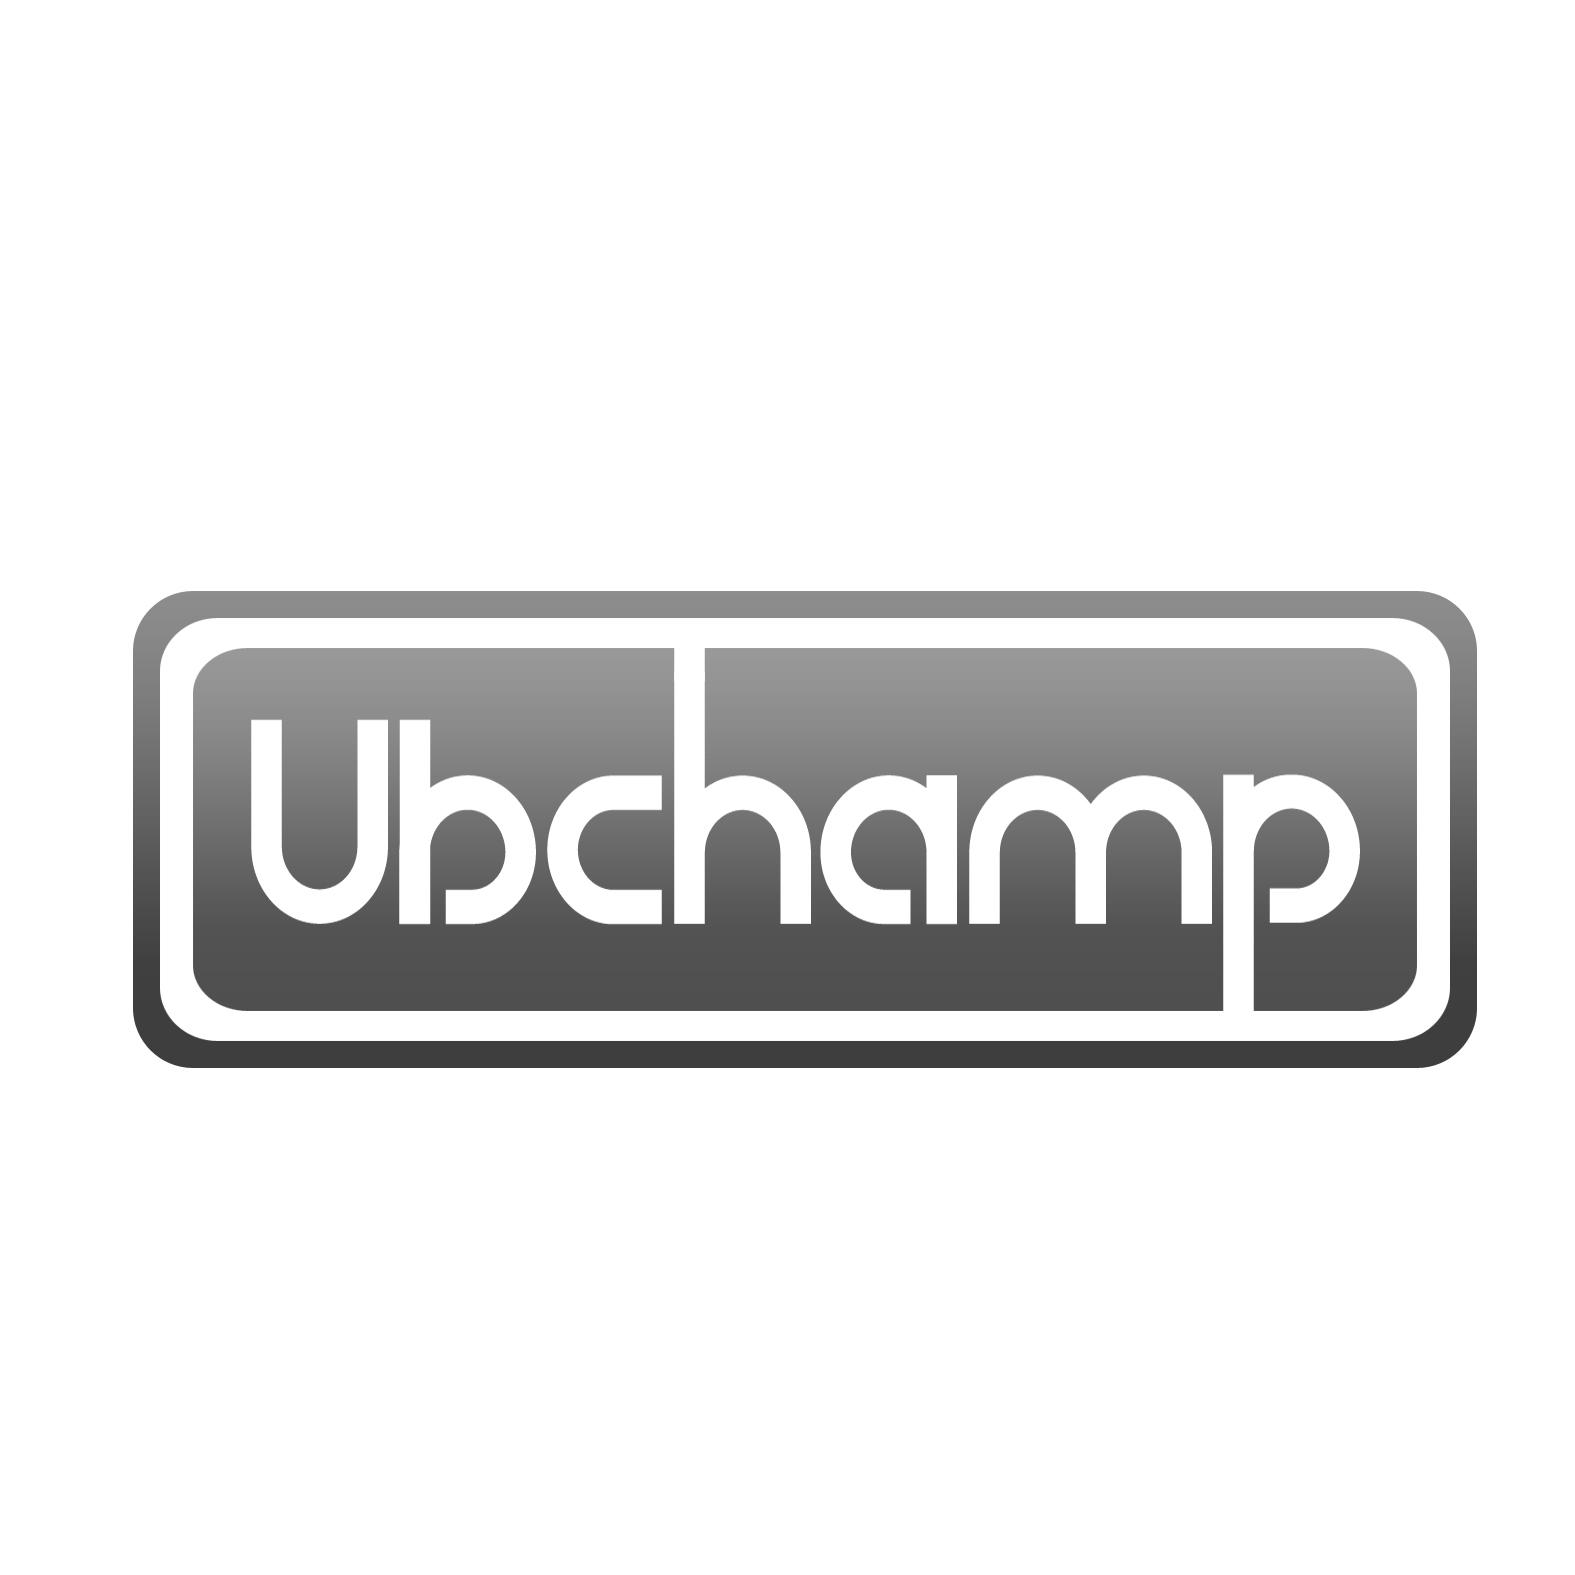 UBCHAMP商标转让